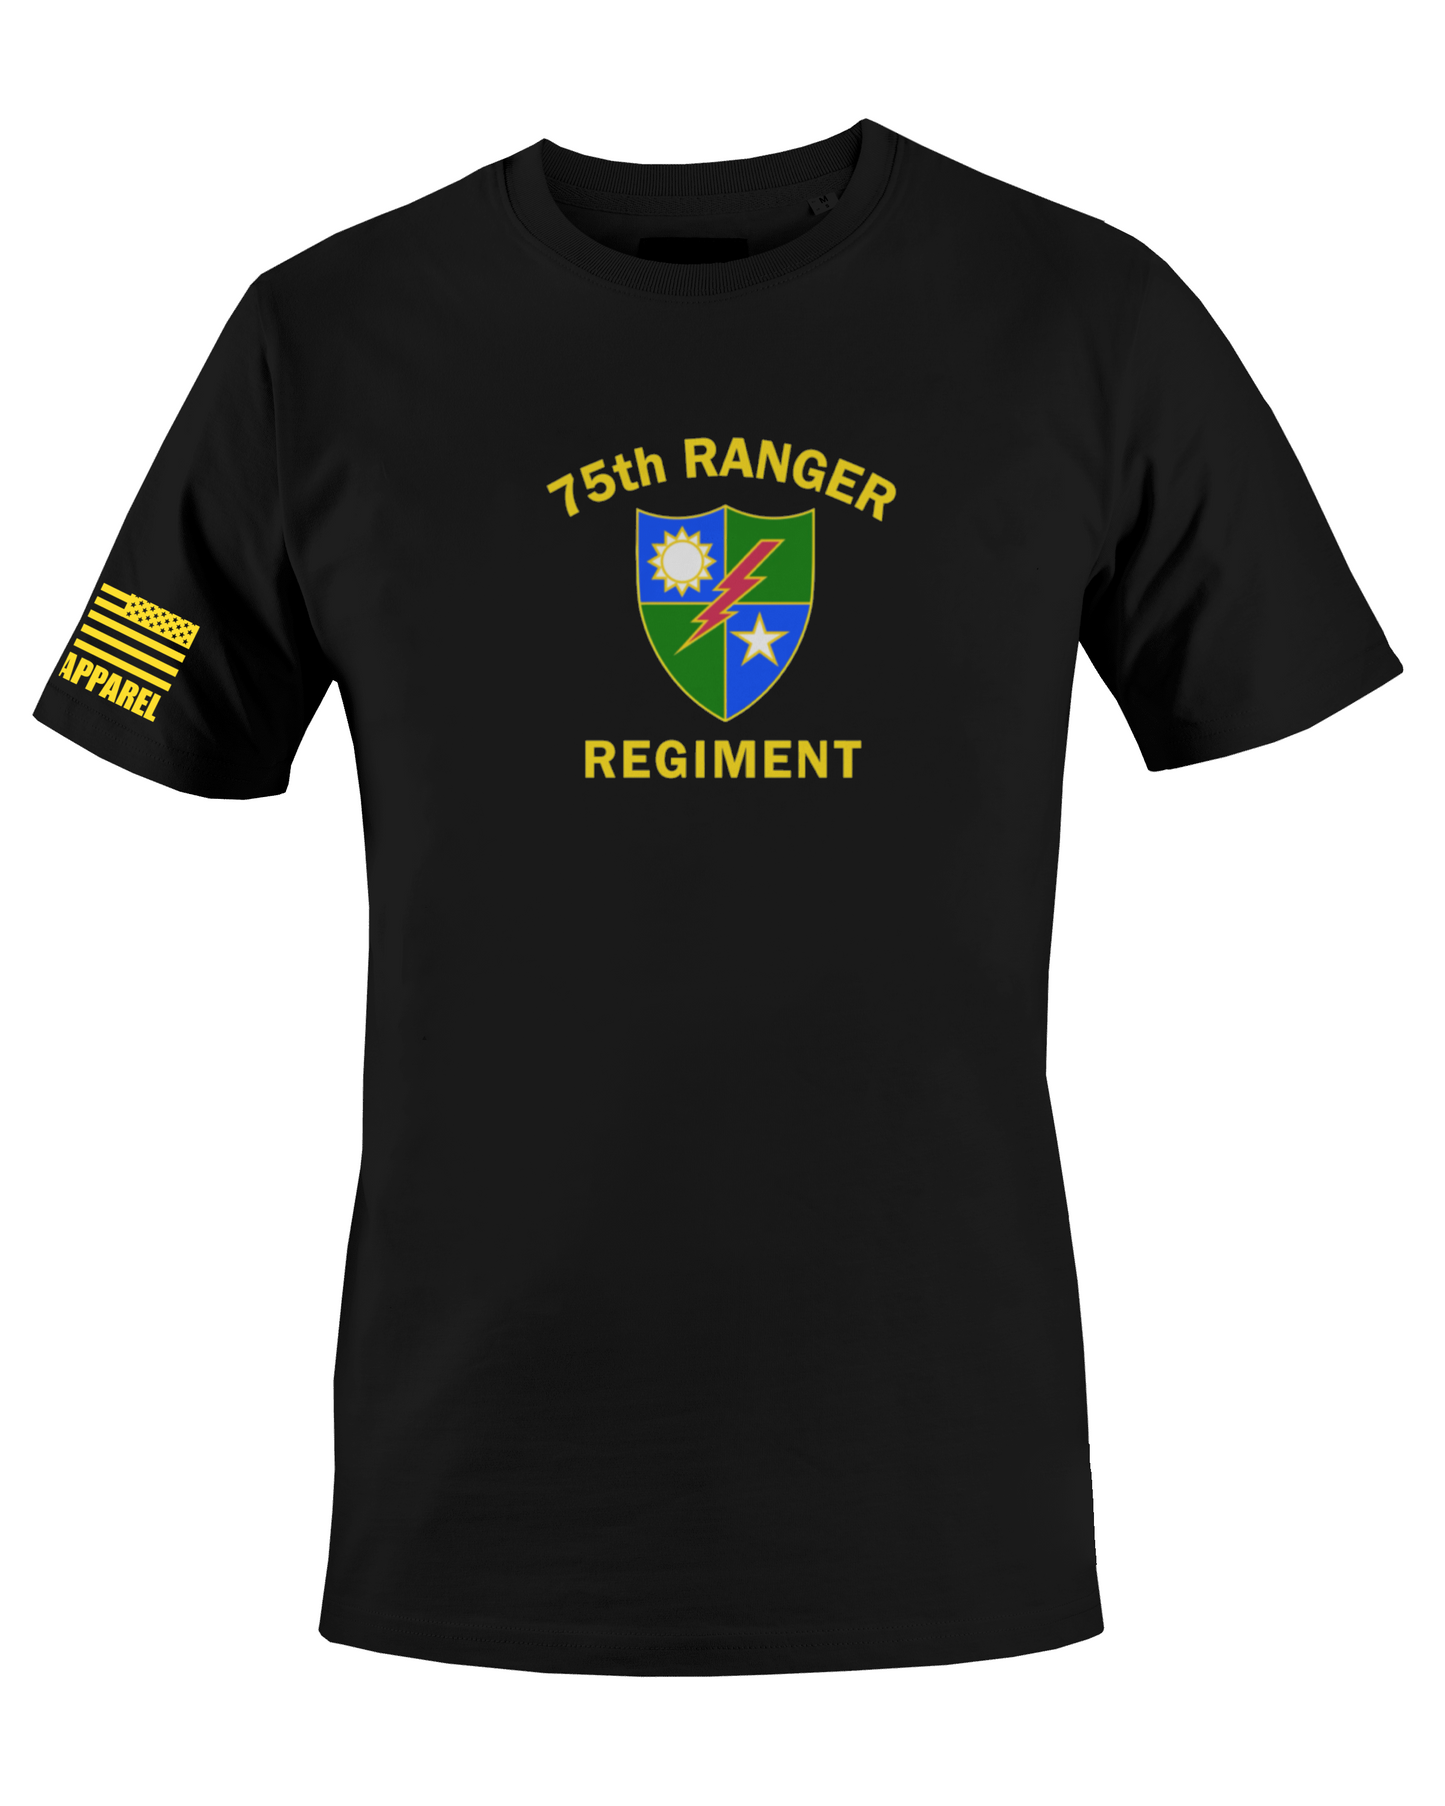 75th RANGER REGIMENT